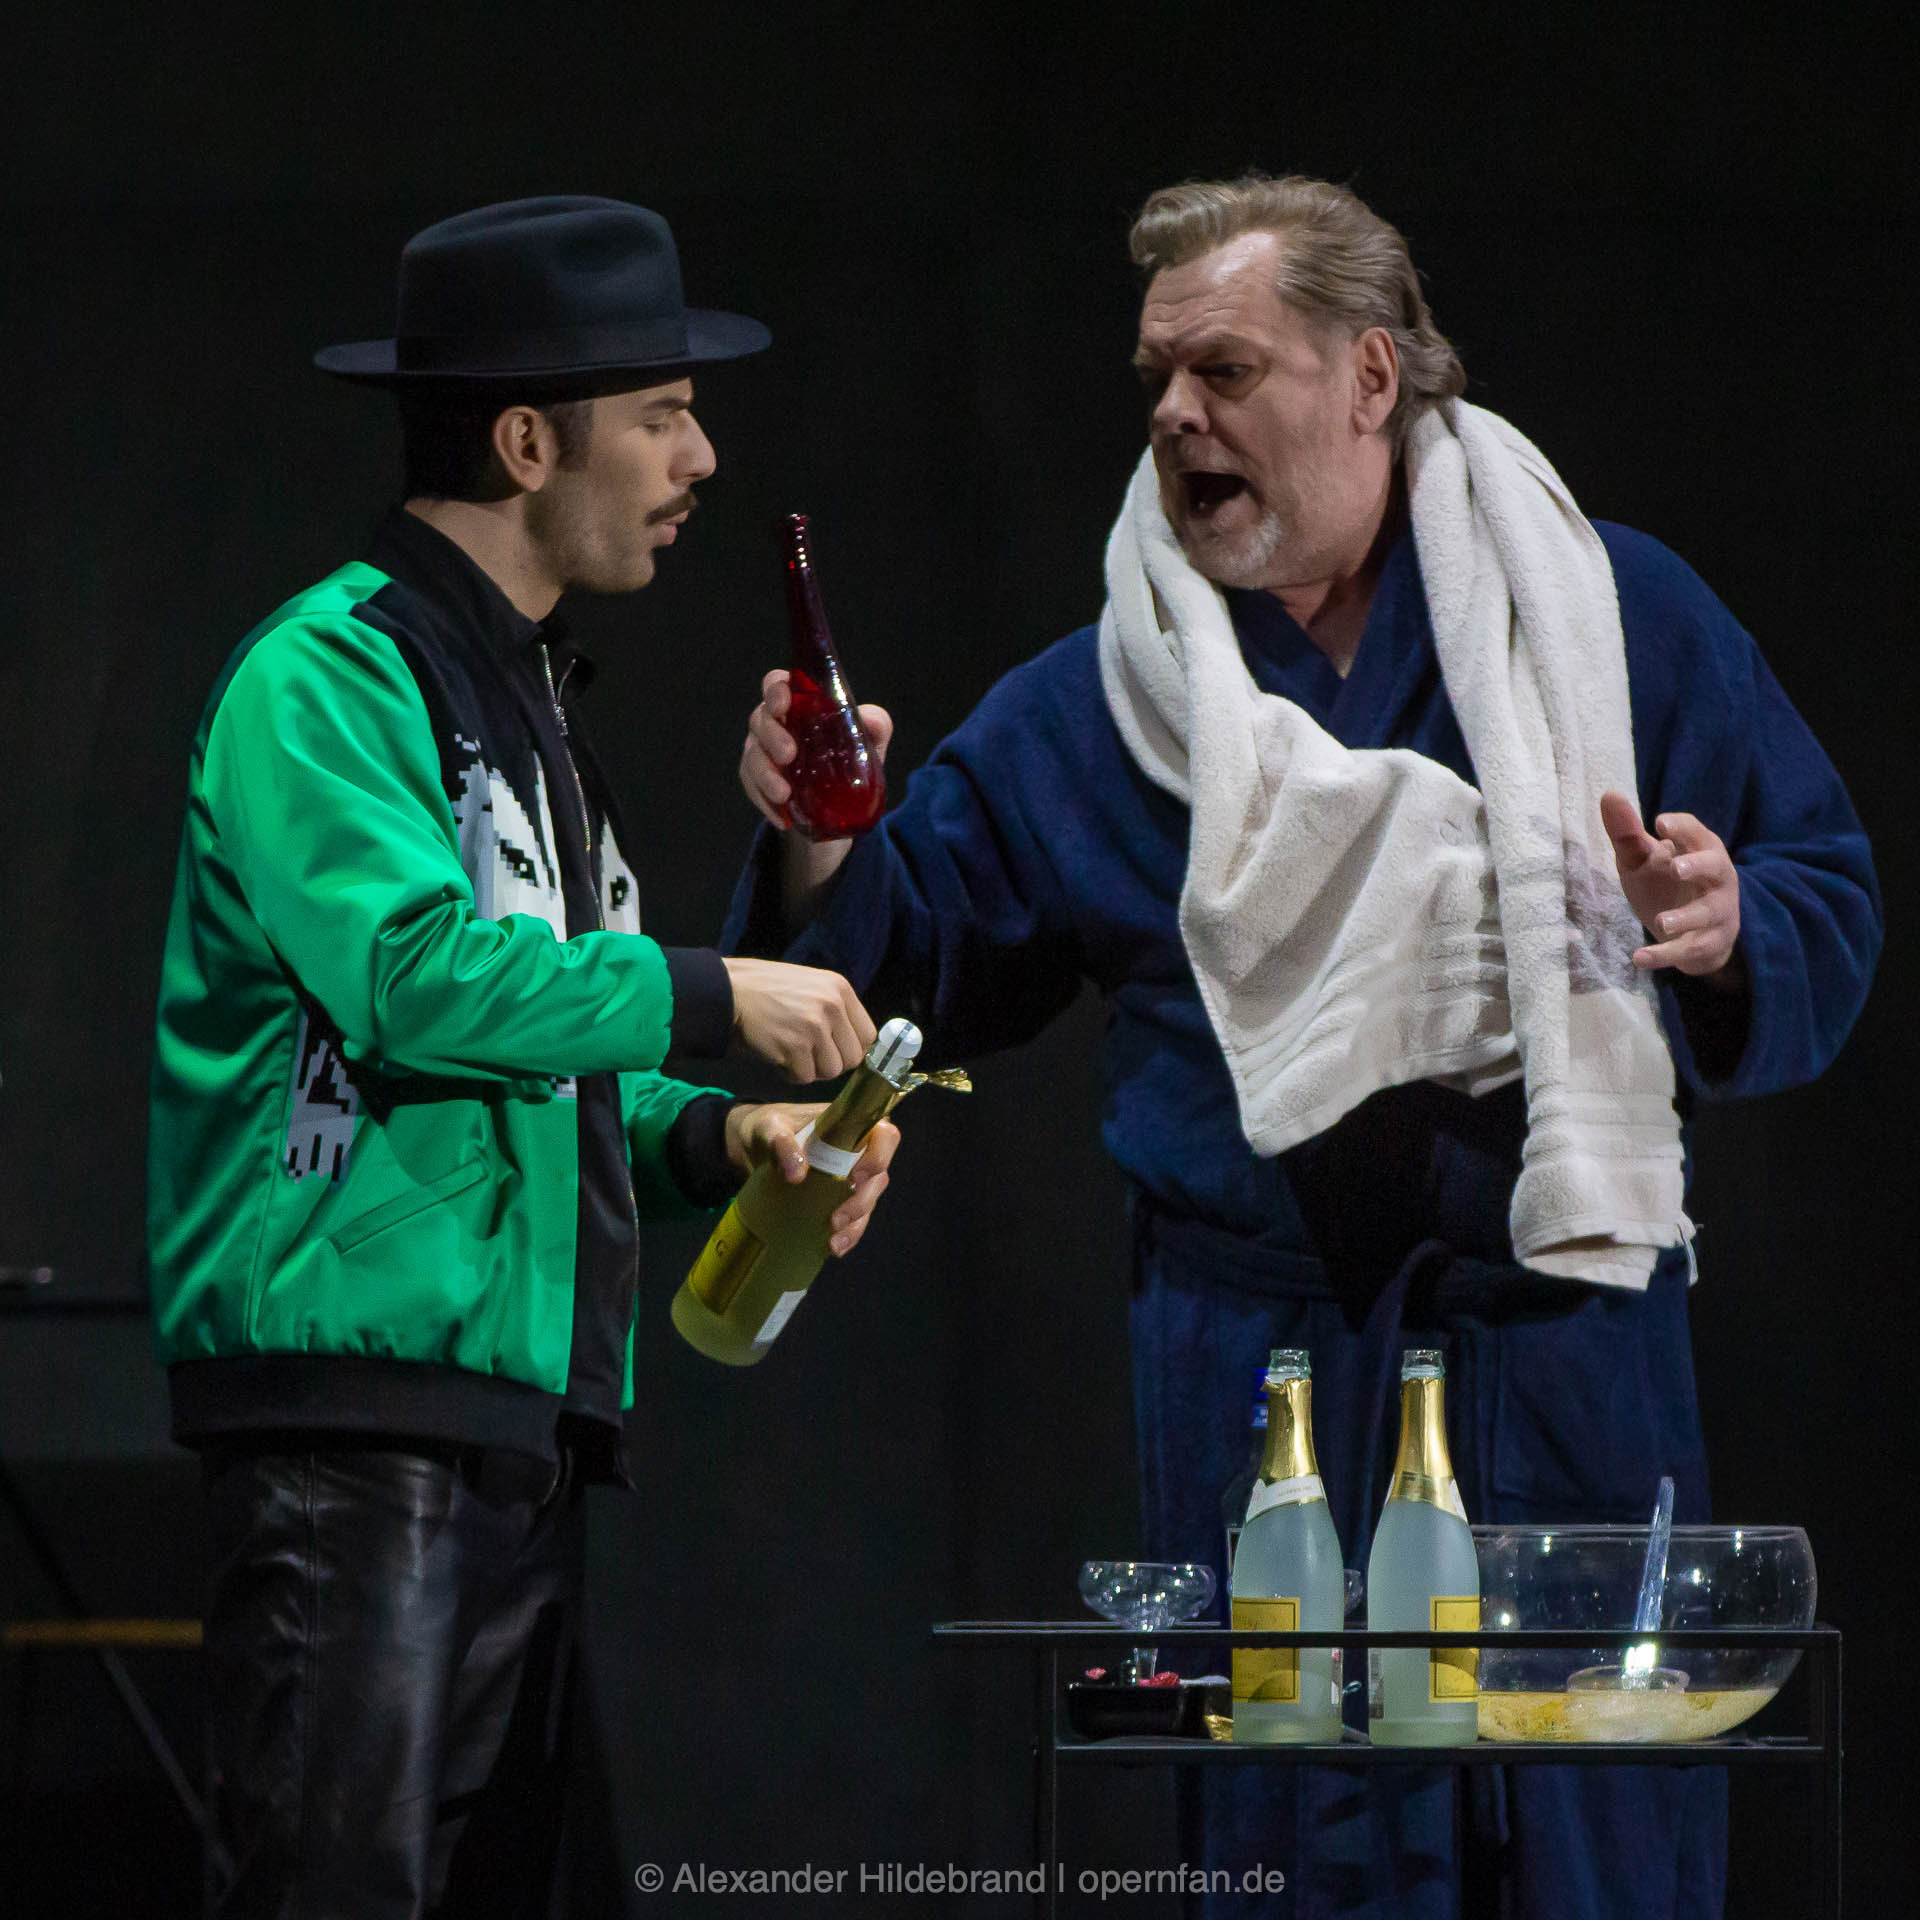 Bei Leporello (Riccardo Fassi) und Don Giovanni (Wolfgang Volle) ist auch gerne mal etwas zu viel Alkohol im Spiel. | Foto © Alexander Hildebrand | opernfan.de | IMG 5884